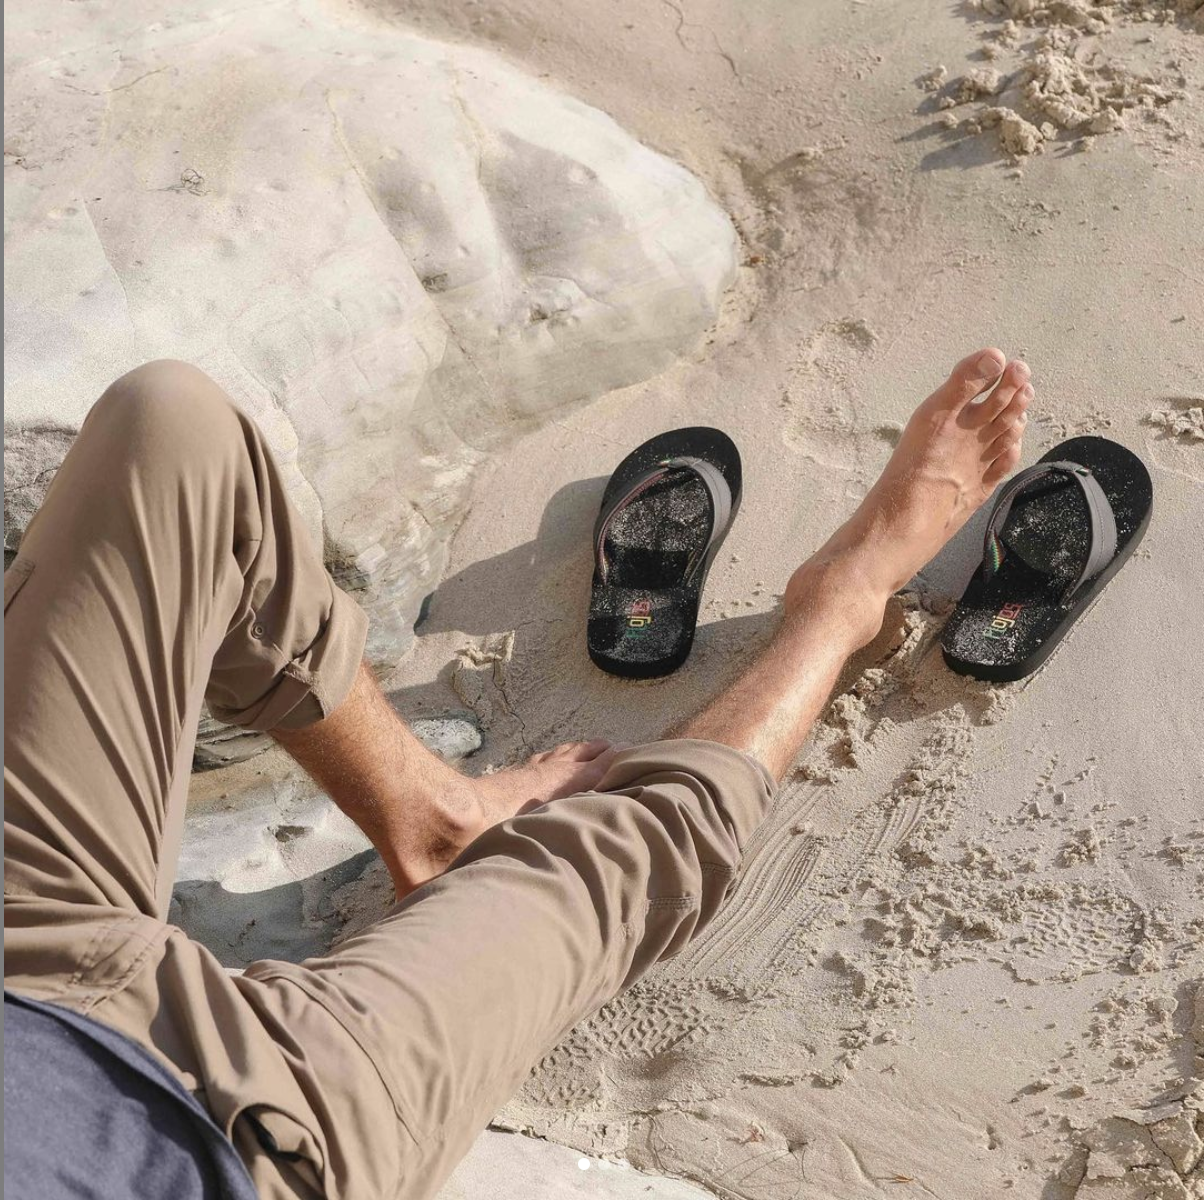 Duke ujævnheder klamre sig Top Tips for Choosing Beach Sandals – flojossandals